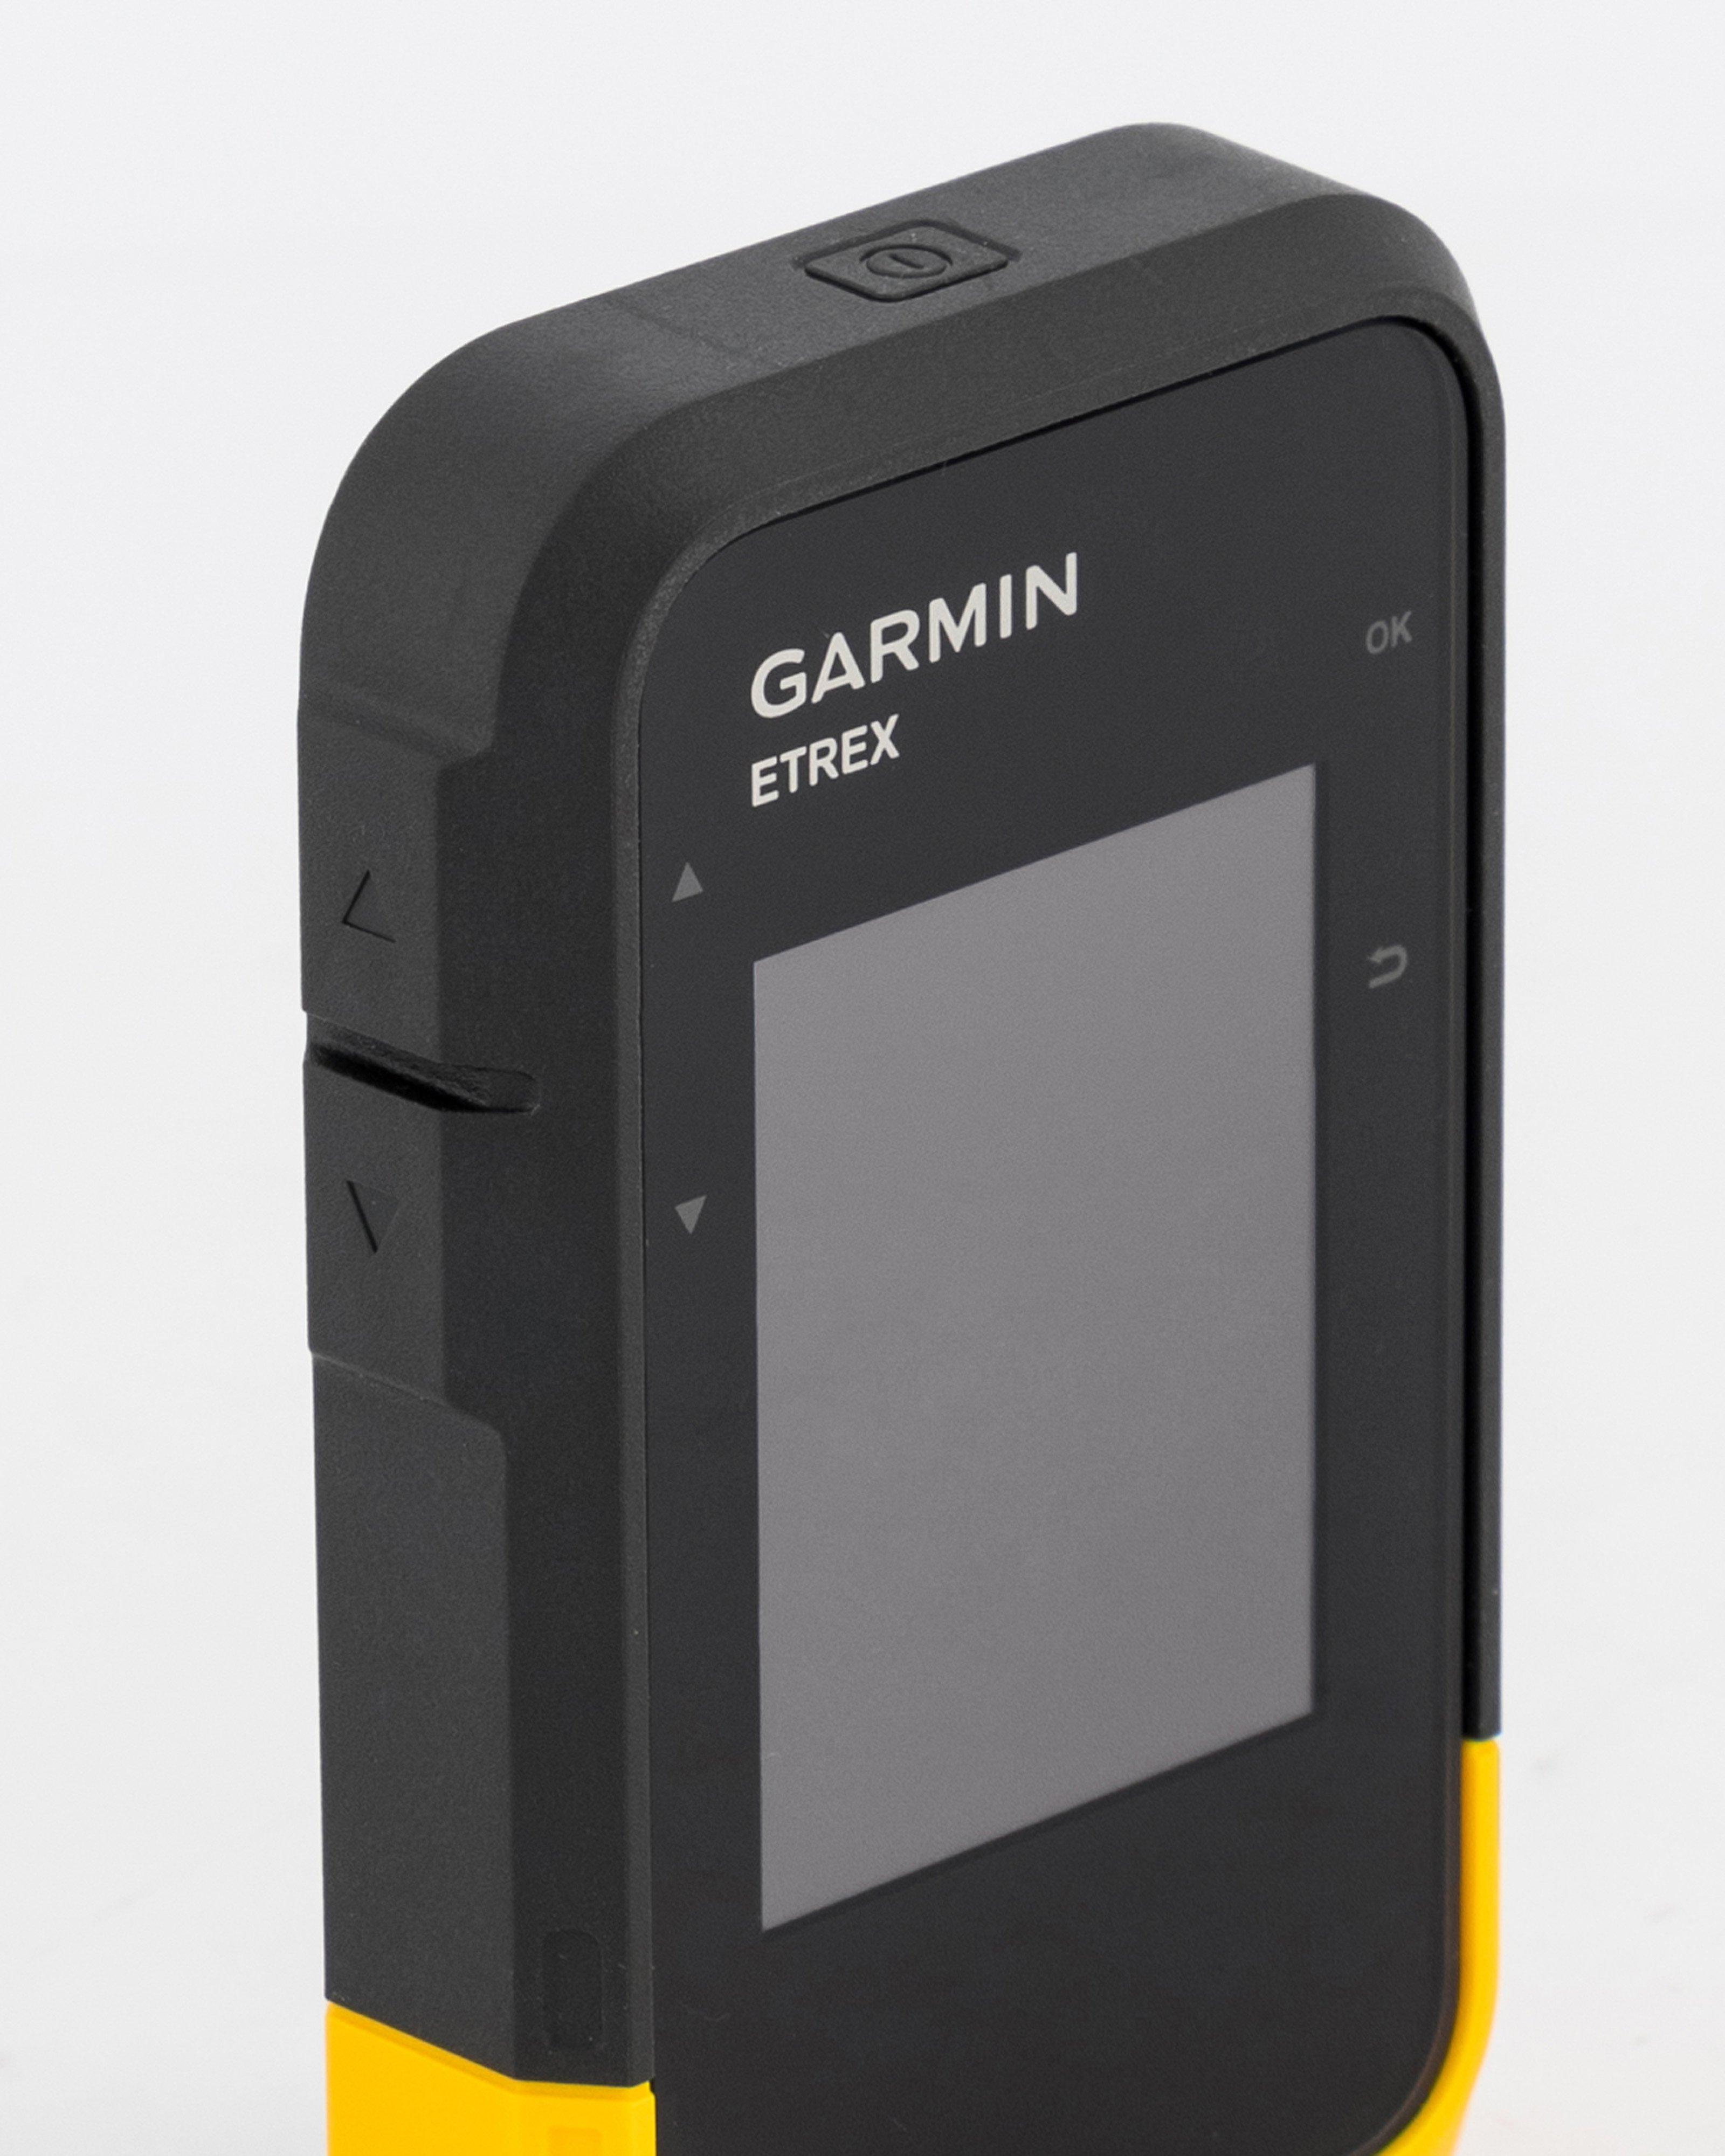 GARMIN eTrex SE Handheld Hiking Navigator -  Black